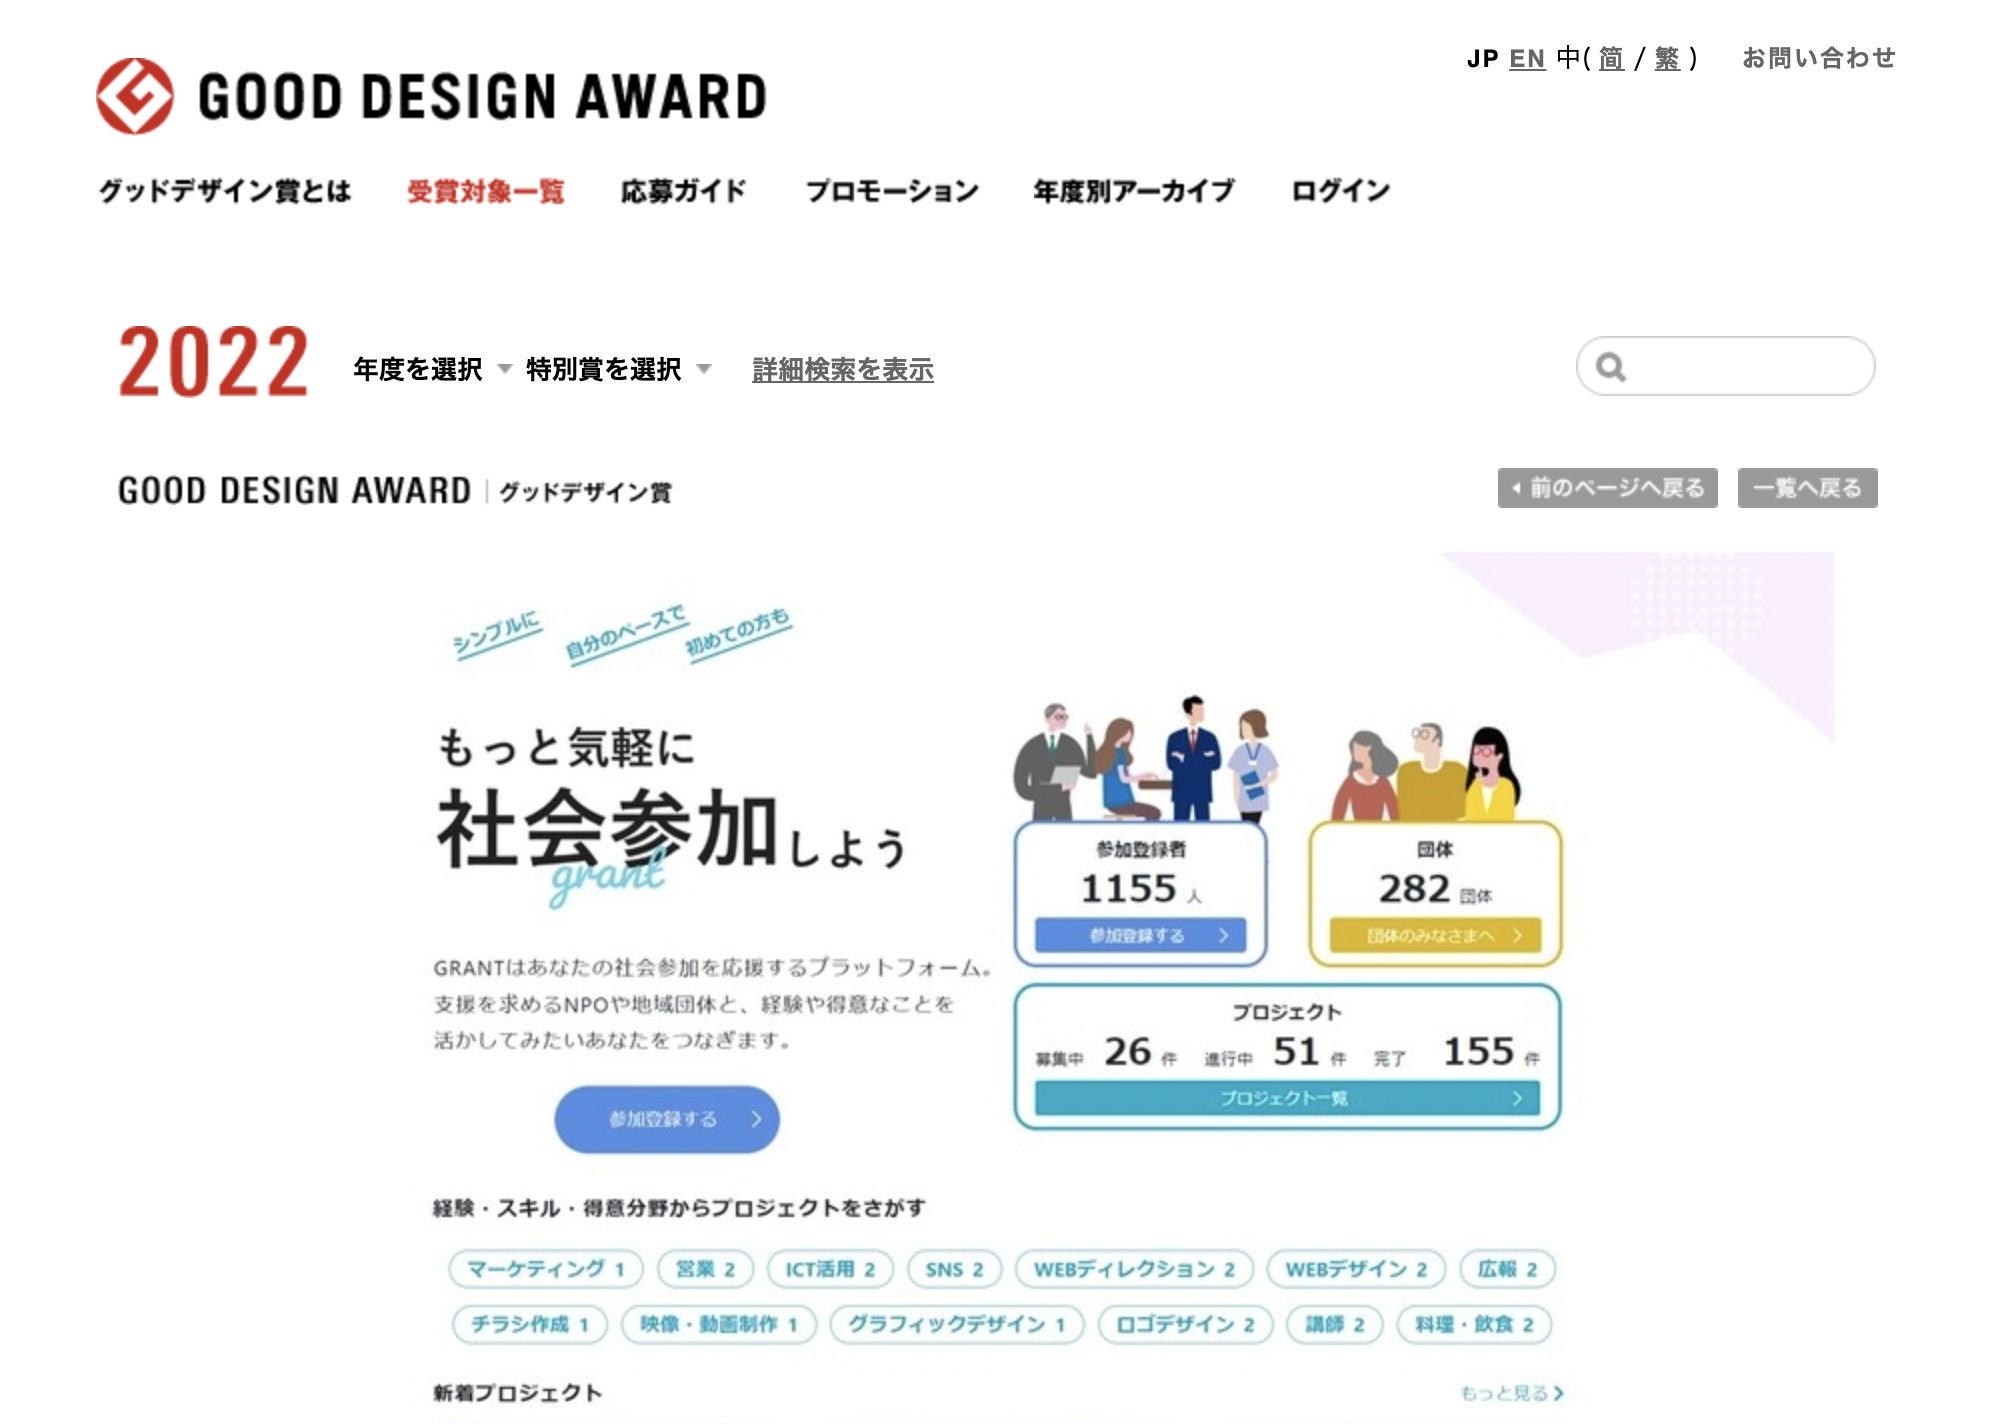 デザイン参画したオンラインプラットフォーム「GRANT」が、2022年度GOOD DESIGN賞を受賞。